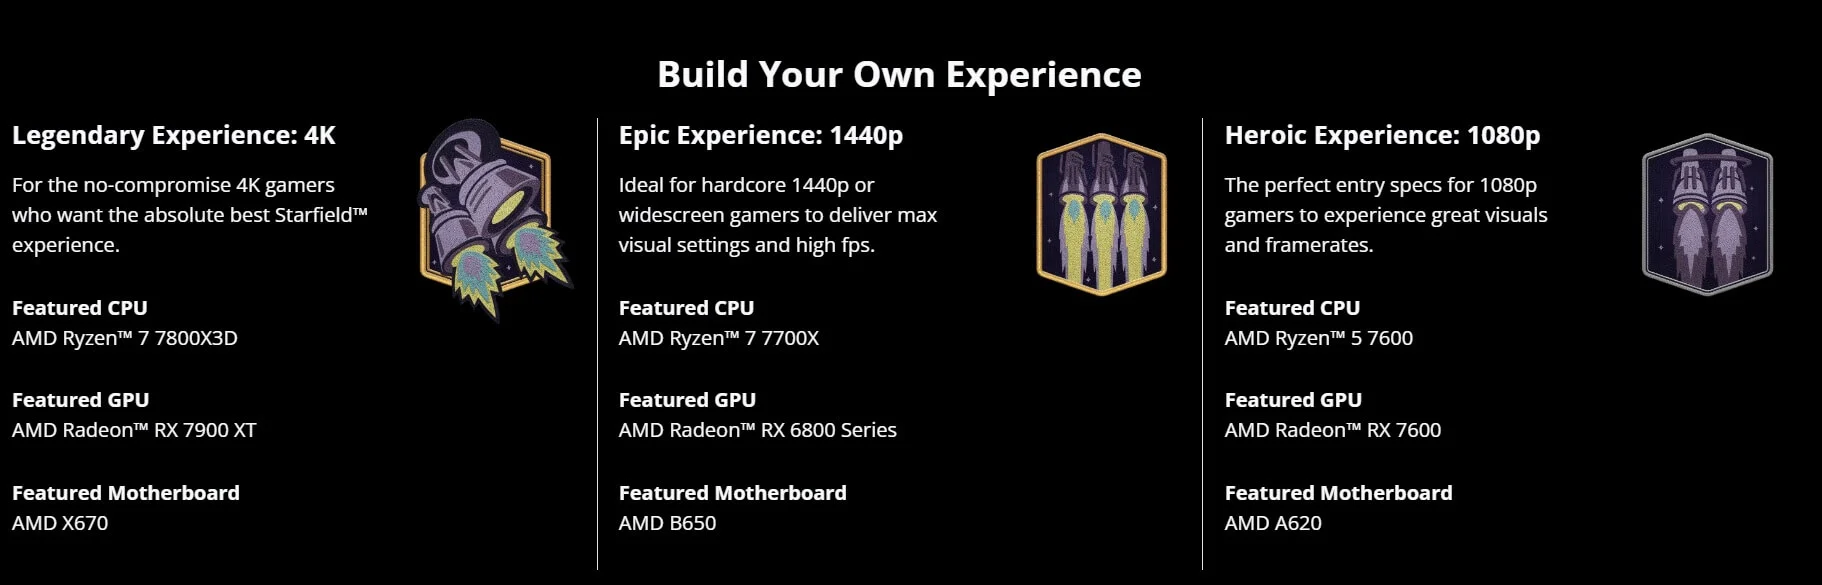 AMD опубликовала системные требования Starfield для 4К-разрешения - фото 1